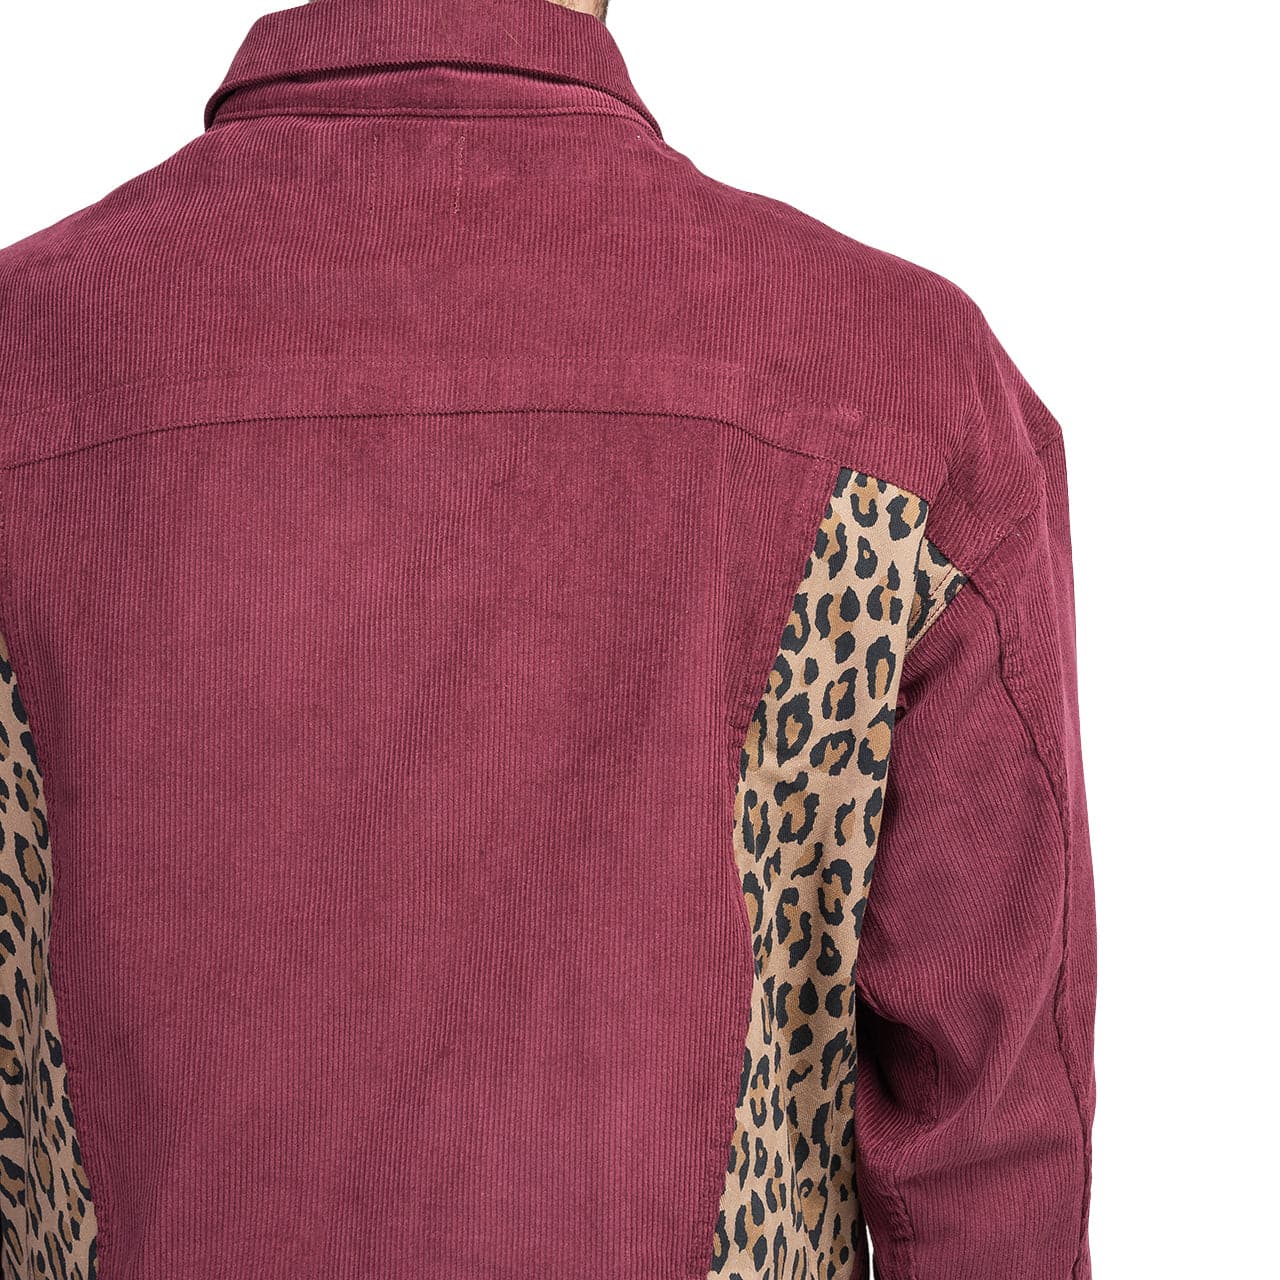 Brain Dead Leopard Contrast Trucker Jacket (Bordeaux)  - Allike Store